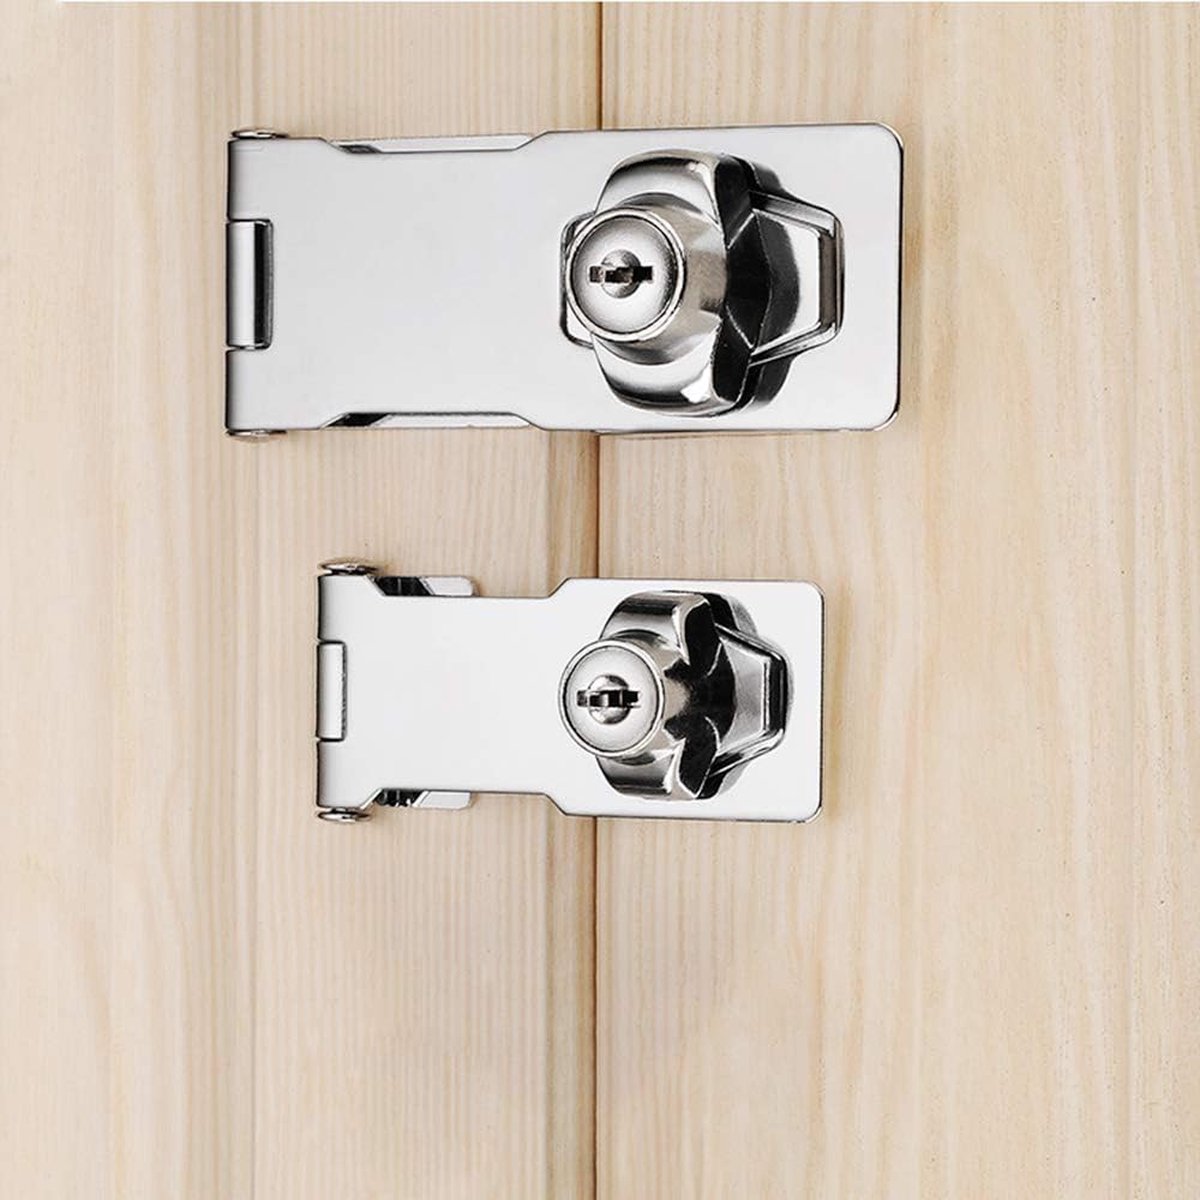 Hangslotbeugelnieten, 2-delige metalen slotbeugel met hangslot en sleutel, deurslotbeugel, deurslotvergrendeling, veiligheidsdeursluiting Poortvergrendelingsvergrendeling voor deurkasten